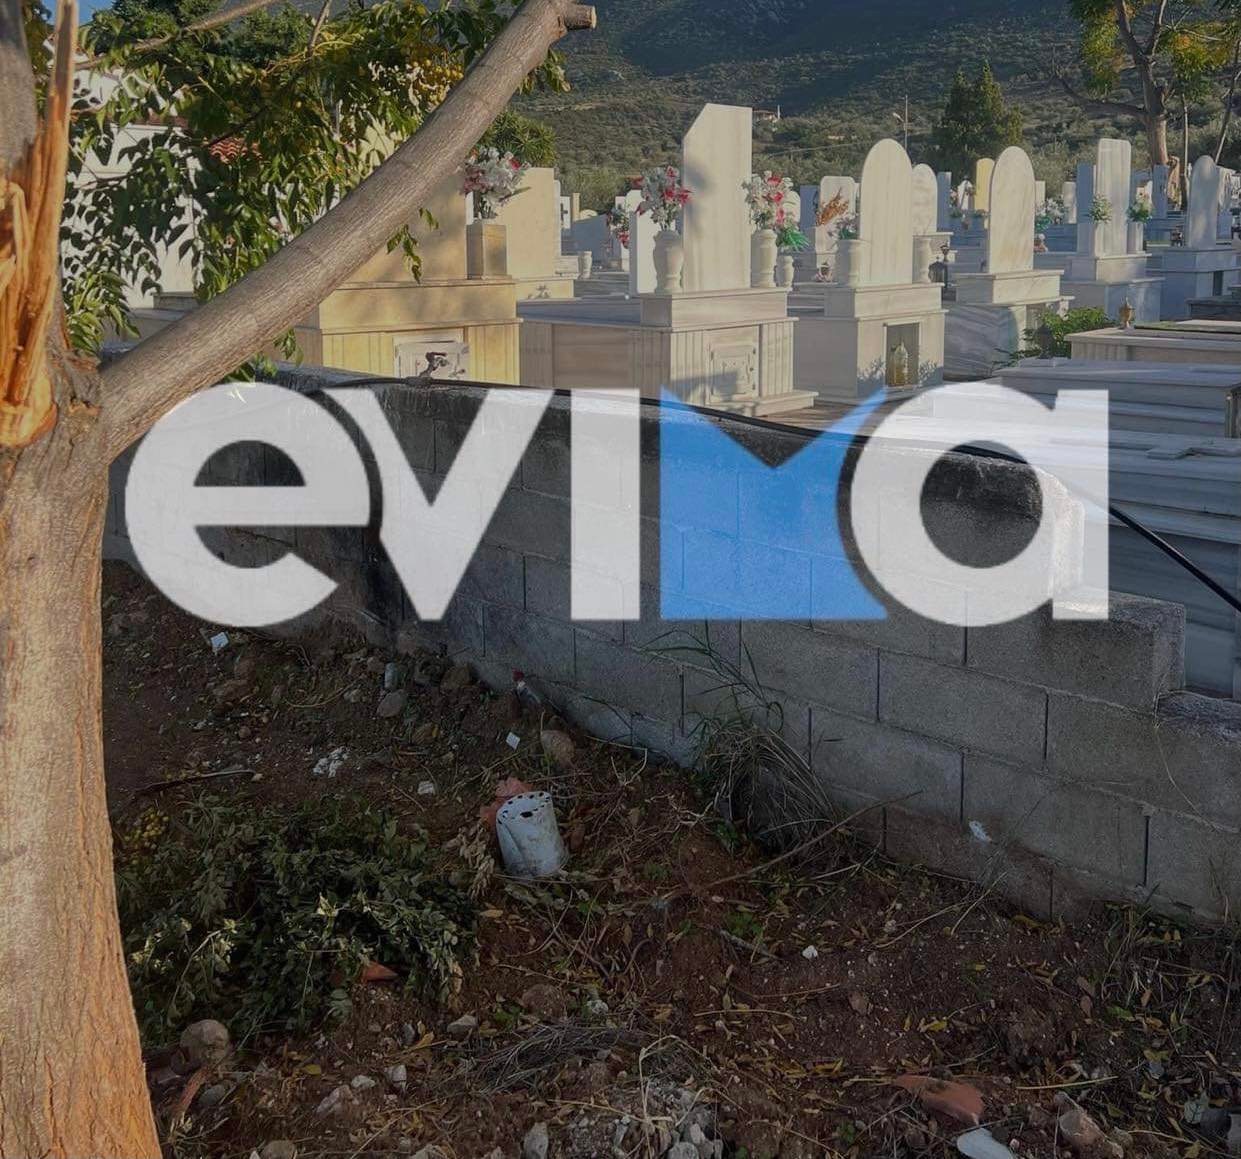 Χαλκίδα: «Εικόνες ντροπής στο νεκροταφείο του Άγιου Ανδρέα – Εκτεθειμένο σε αδέσποτα», λέει ο πρόεδρος